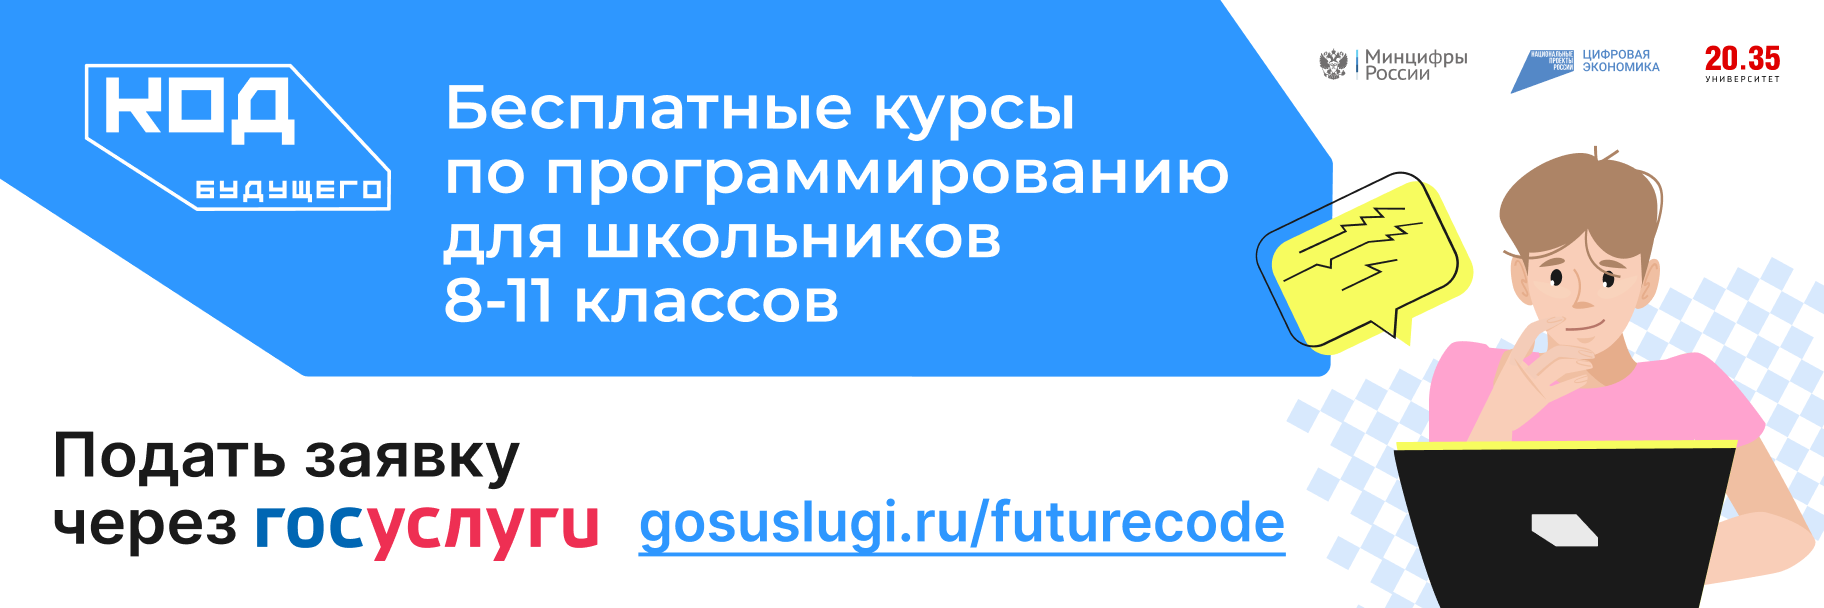 Код будущего вход в личный кабинет. Код будущего. Проект код будущего. Код будущего для школьников. Федеральный проект код будущего.